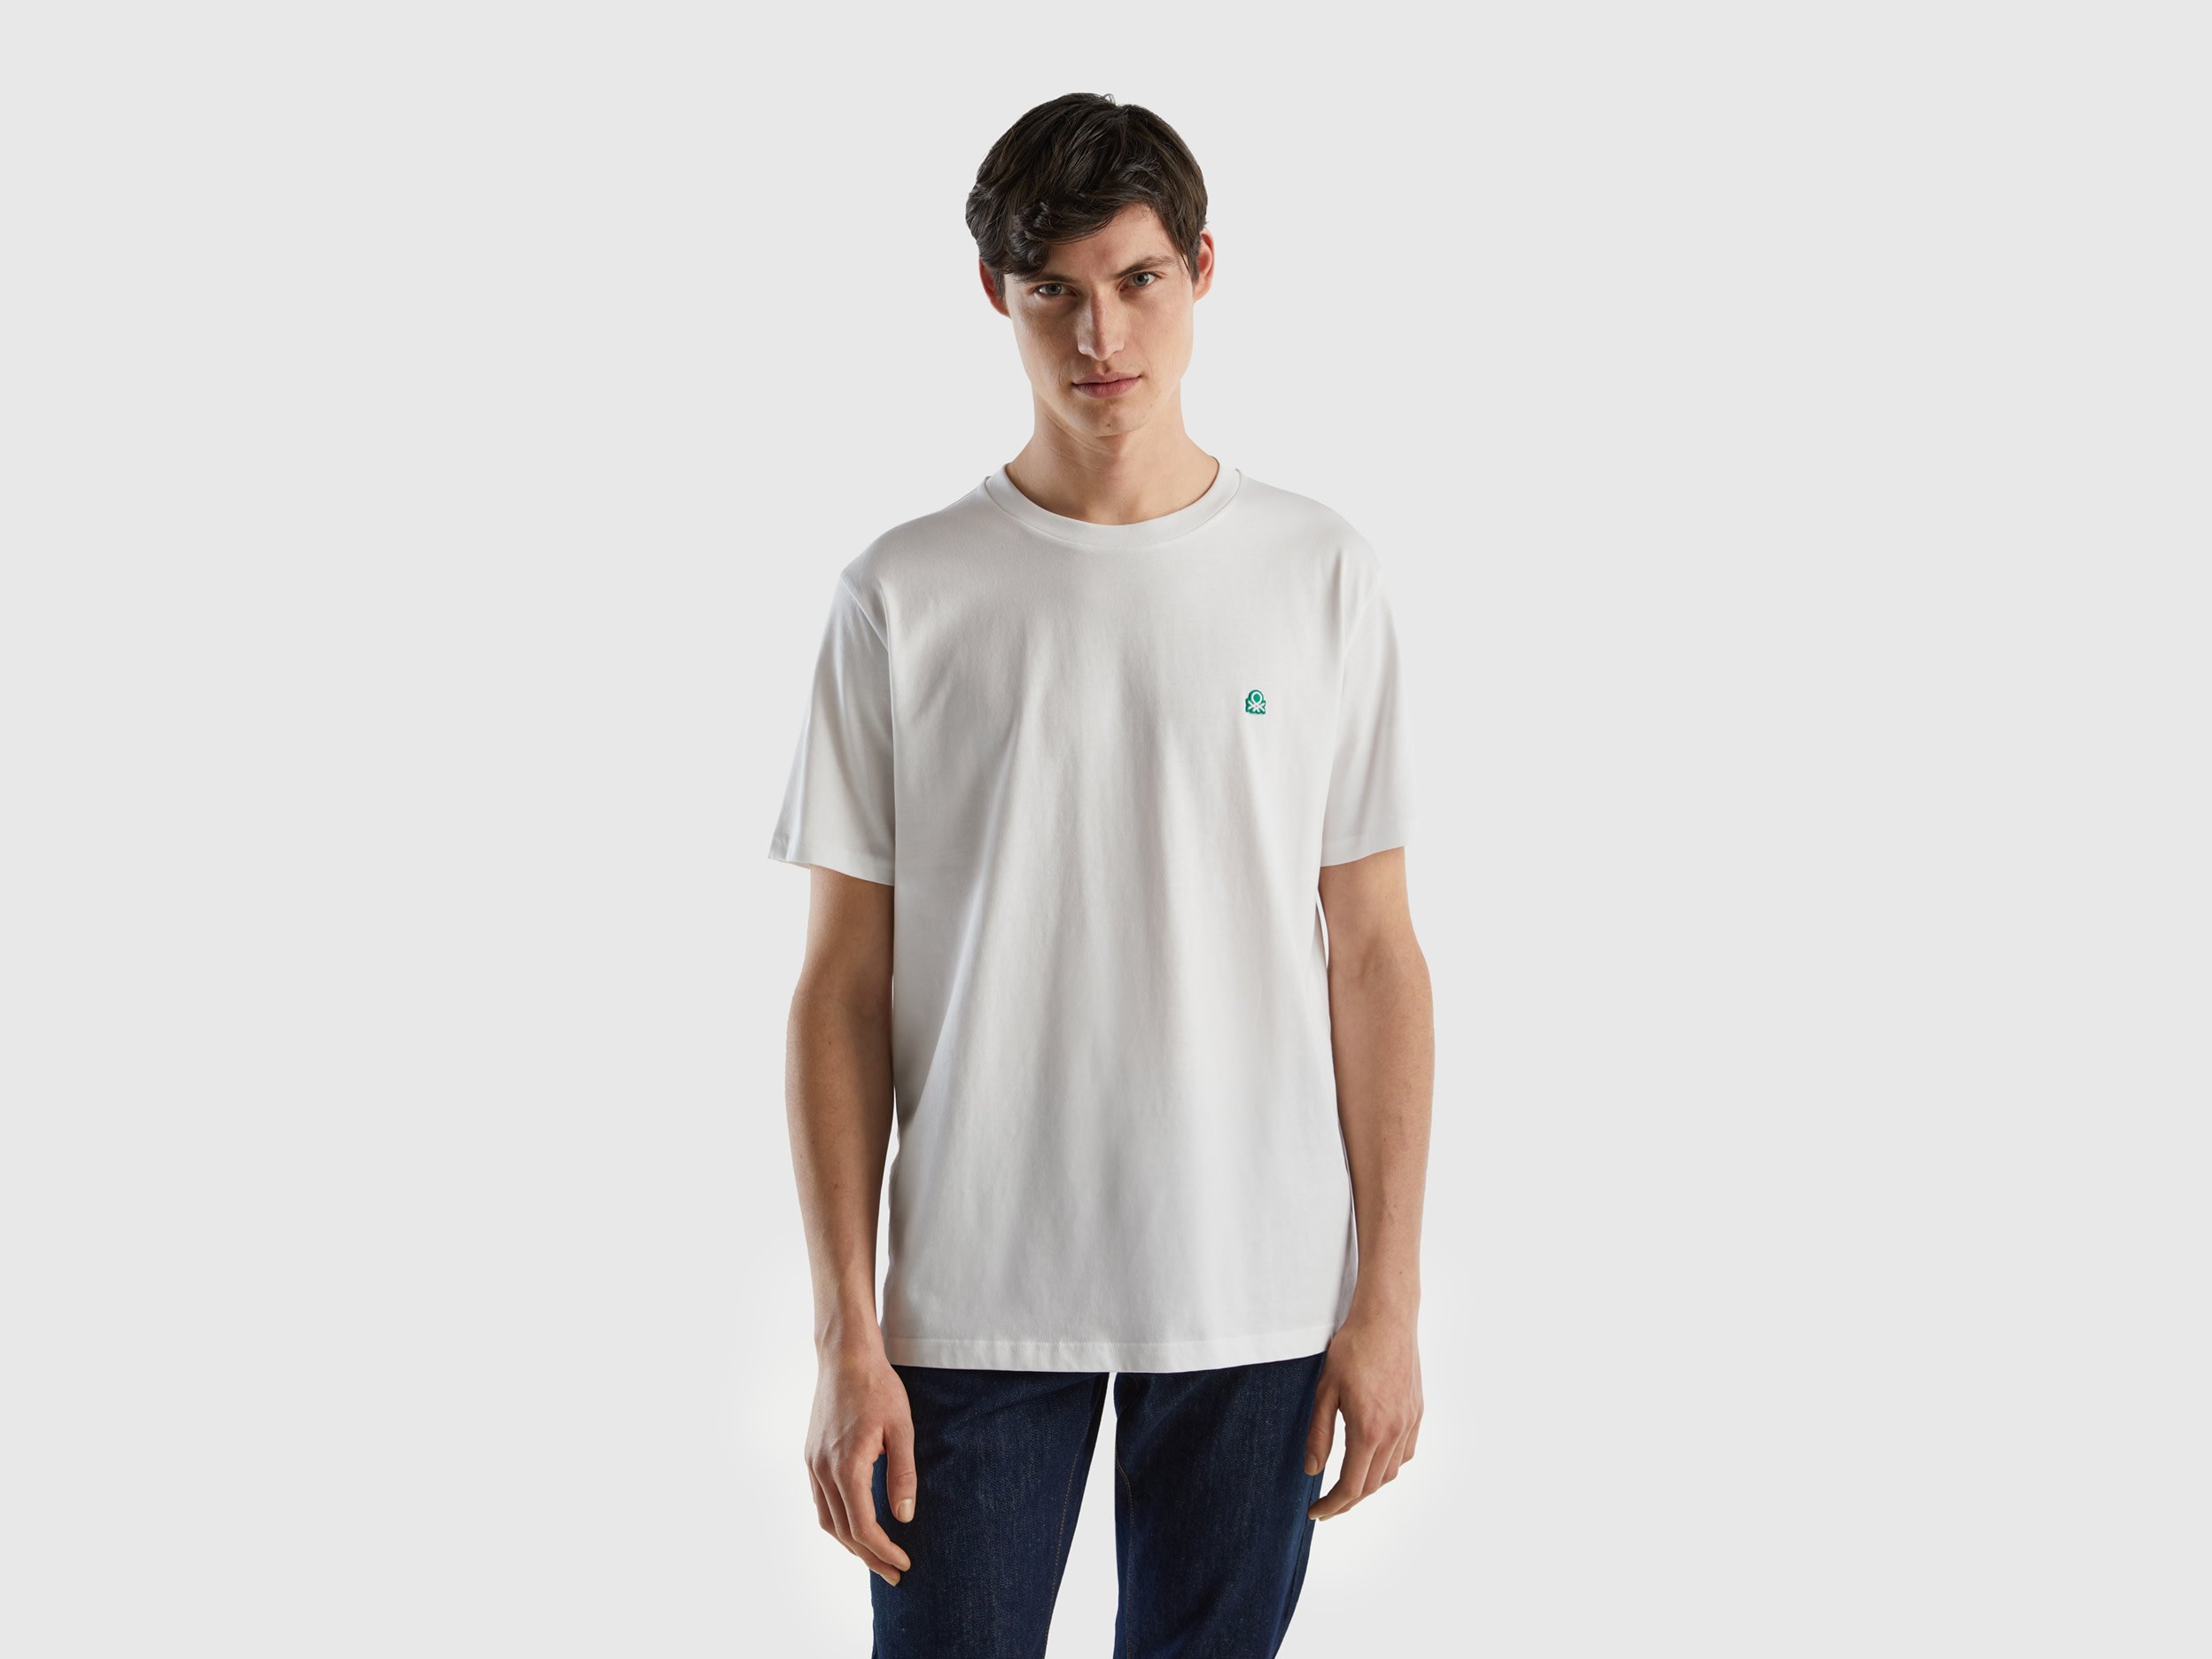 Image of Benetton, 100% Organic Cotton Basic T-shirt, size XXXL, White, Men